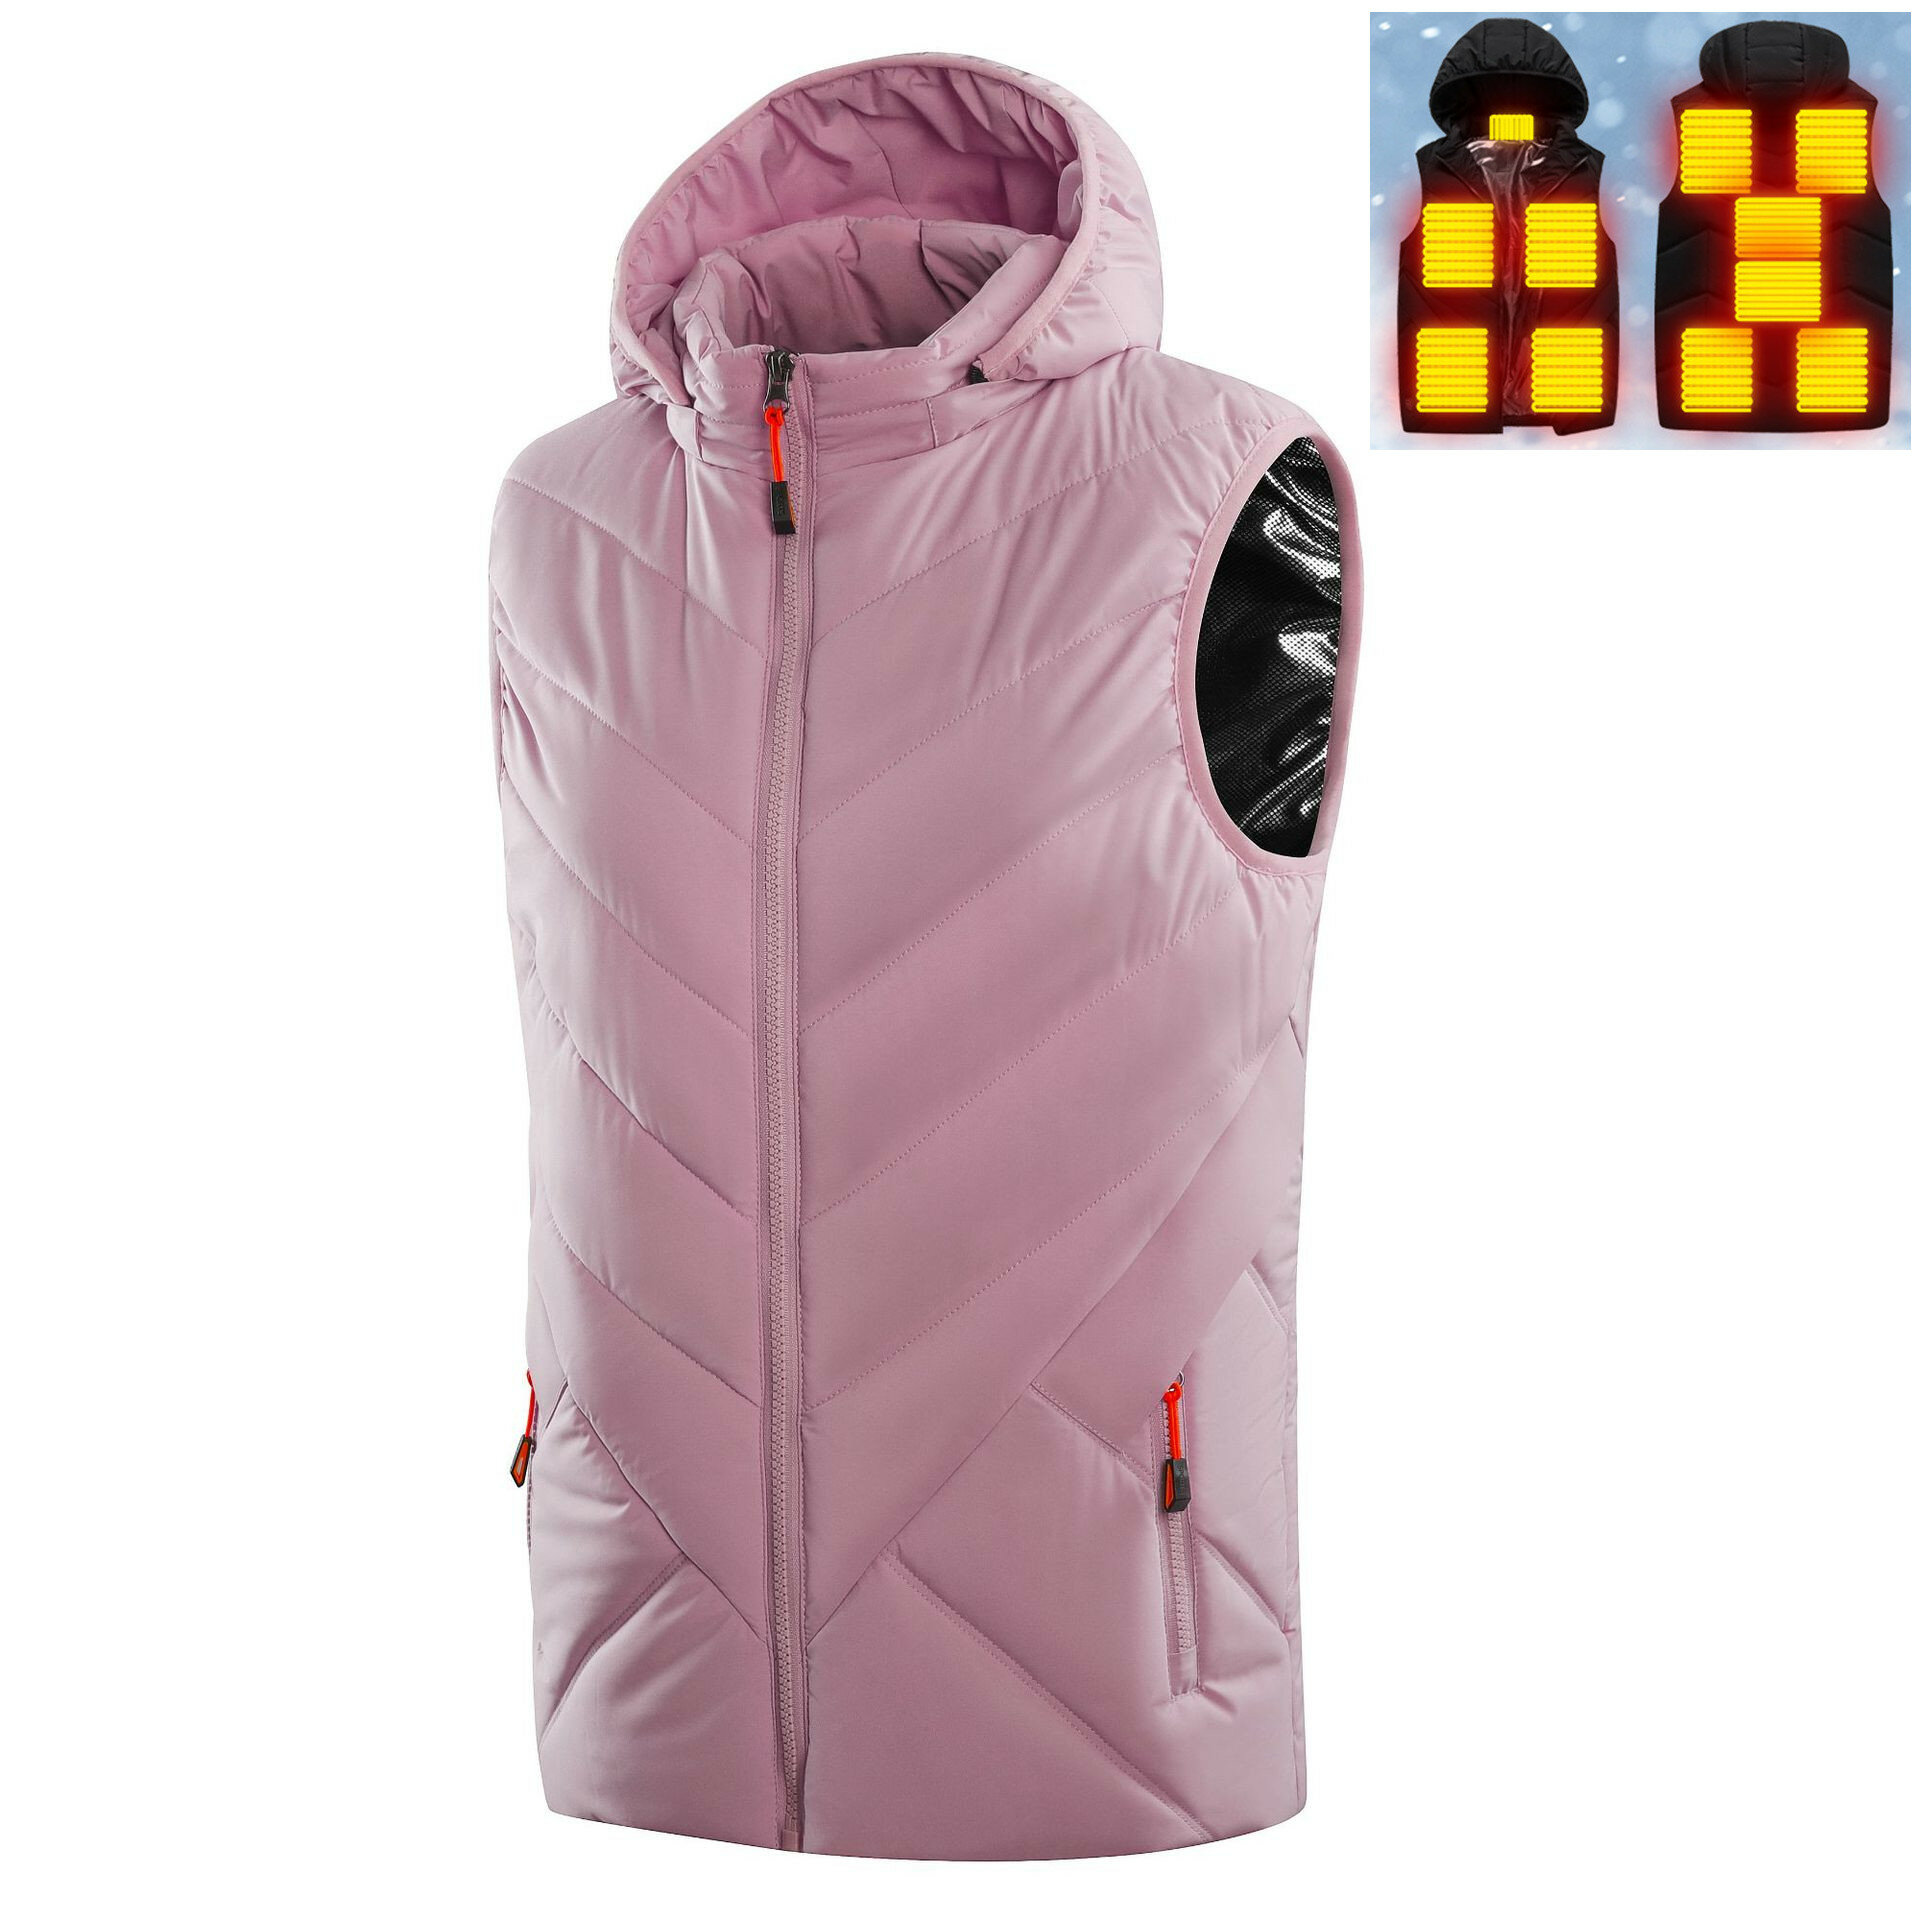 Verwarmd vest voor vrouwen met 11 verwarmingszones, mouwloze katoenen jas met muts en USB-verwarming voor buiten, roze kleding